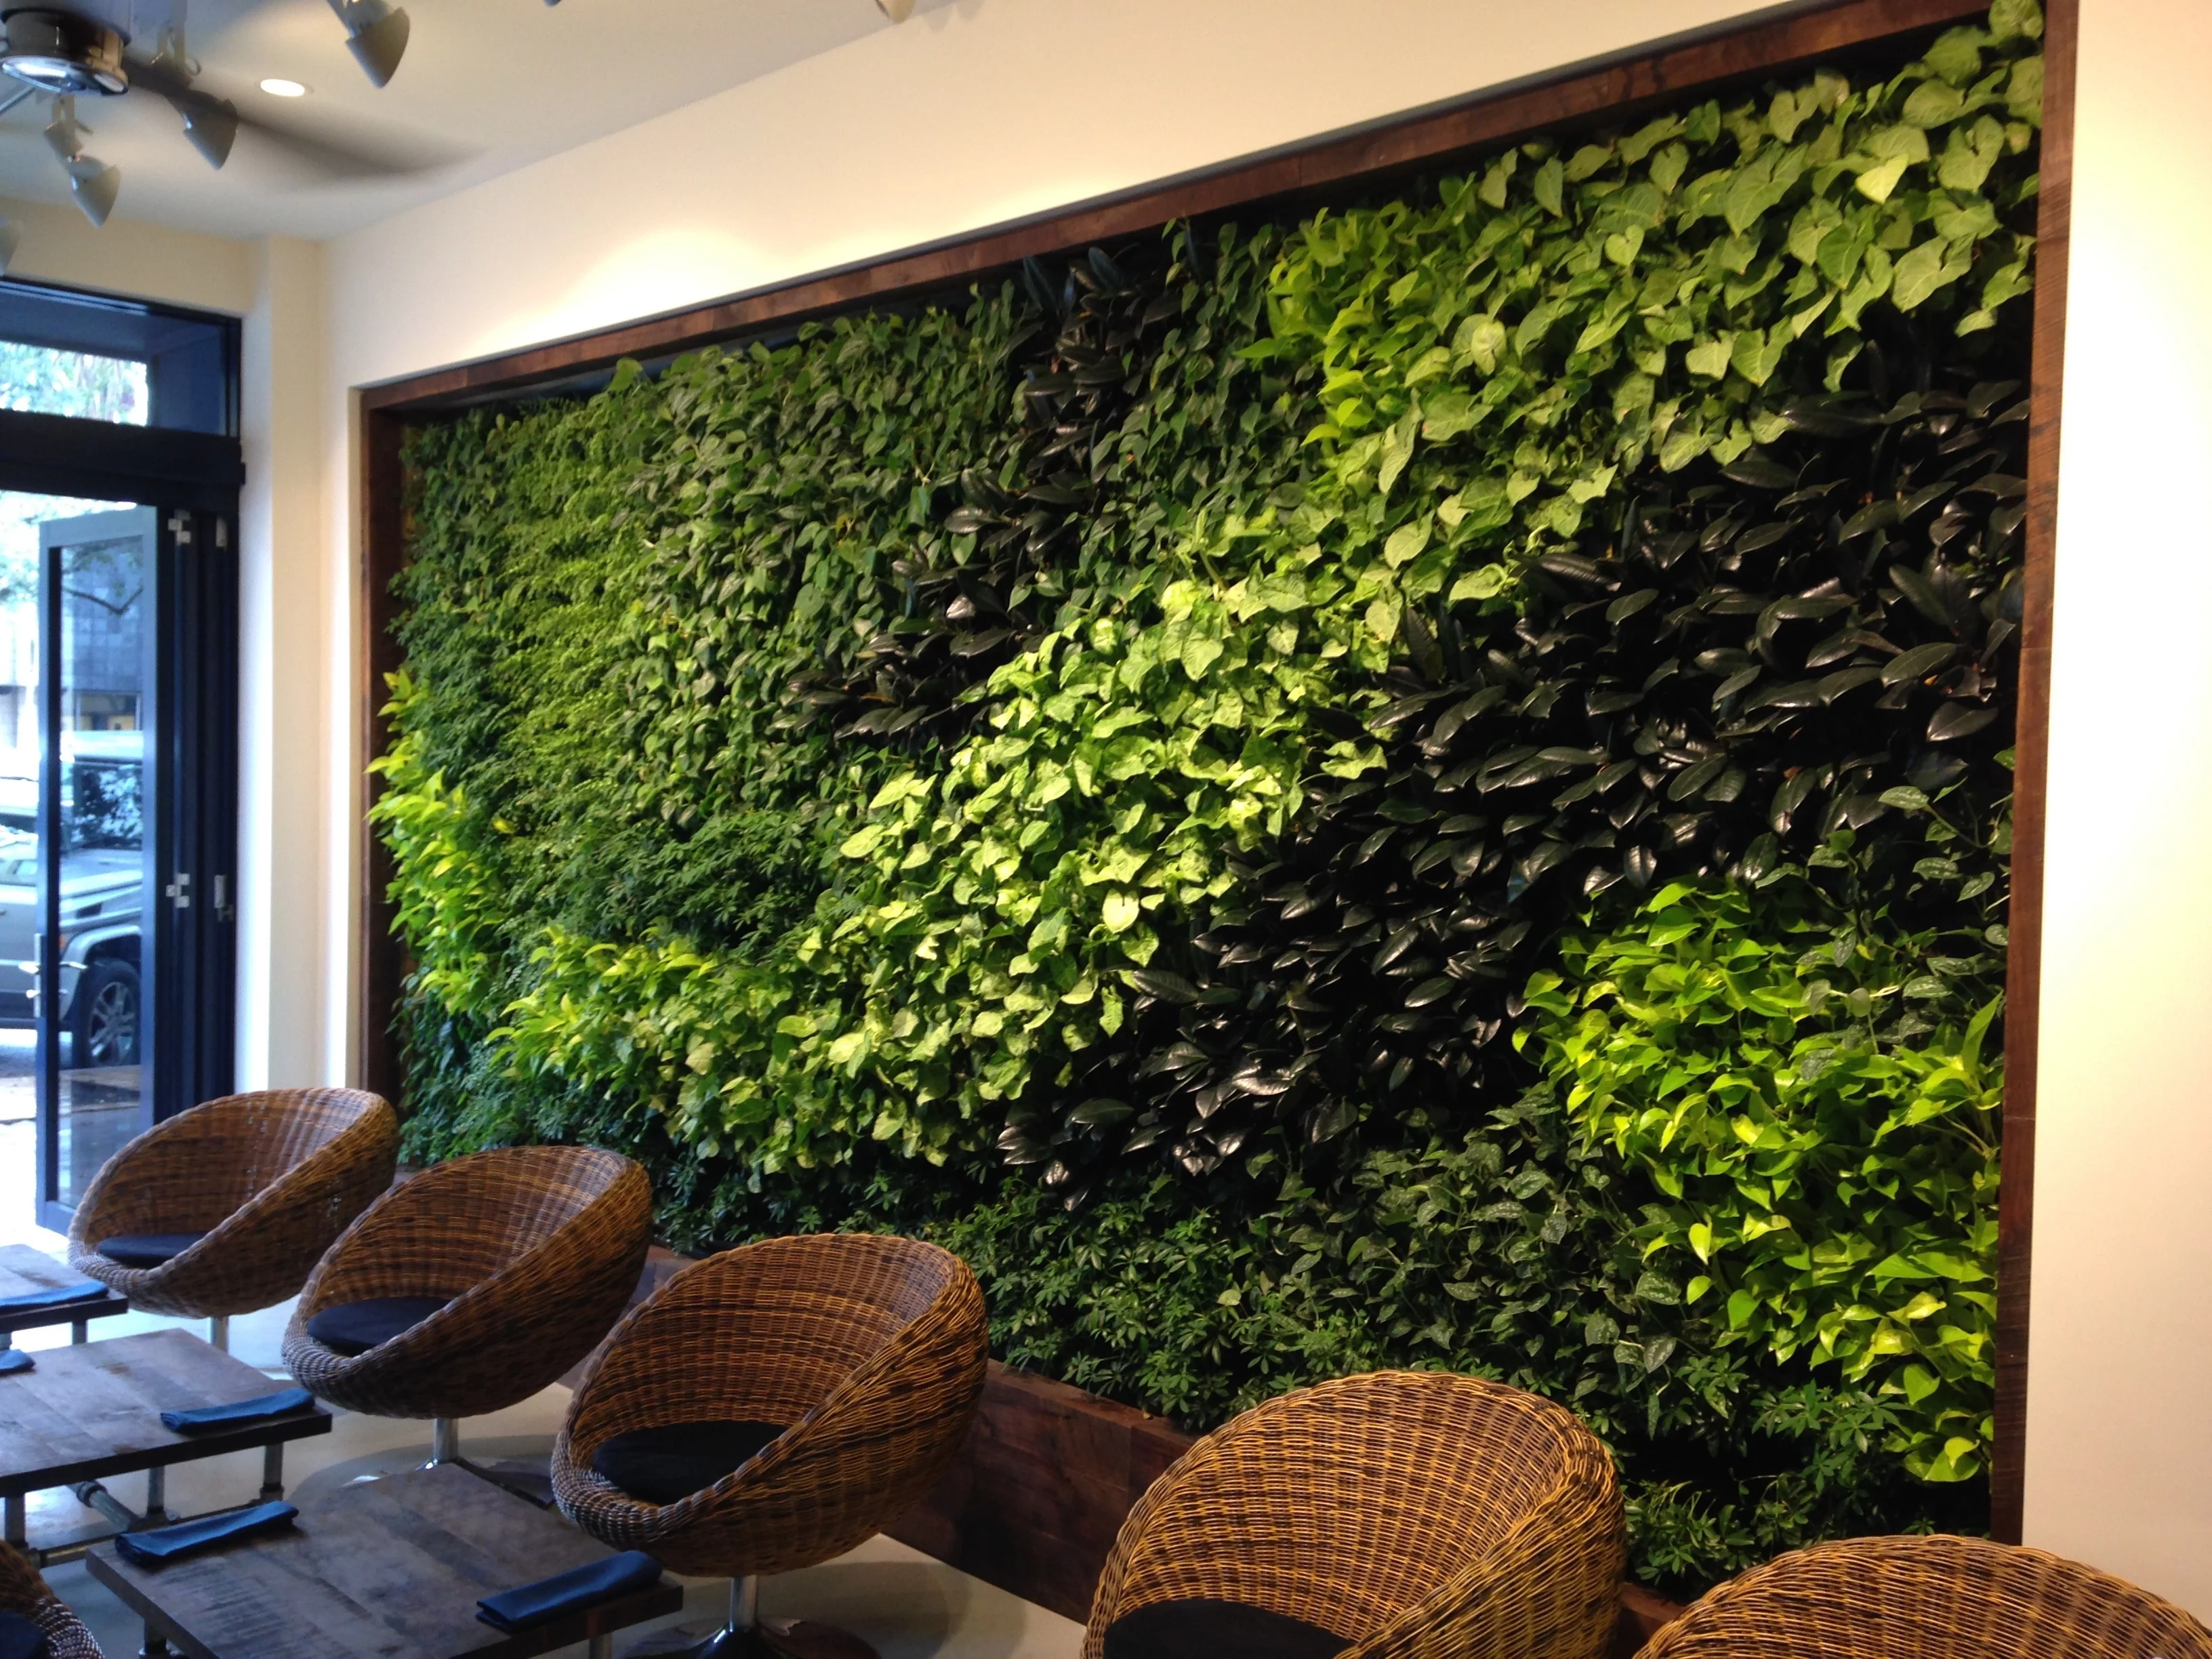 sehr tolle Idee mit Pflanzen Grüne Wandgestaltung